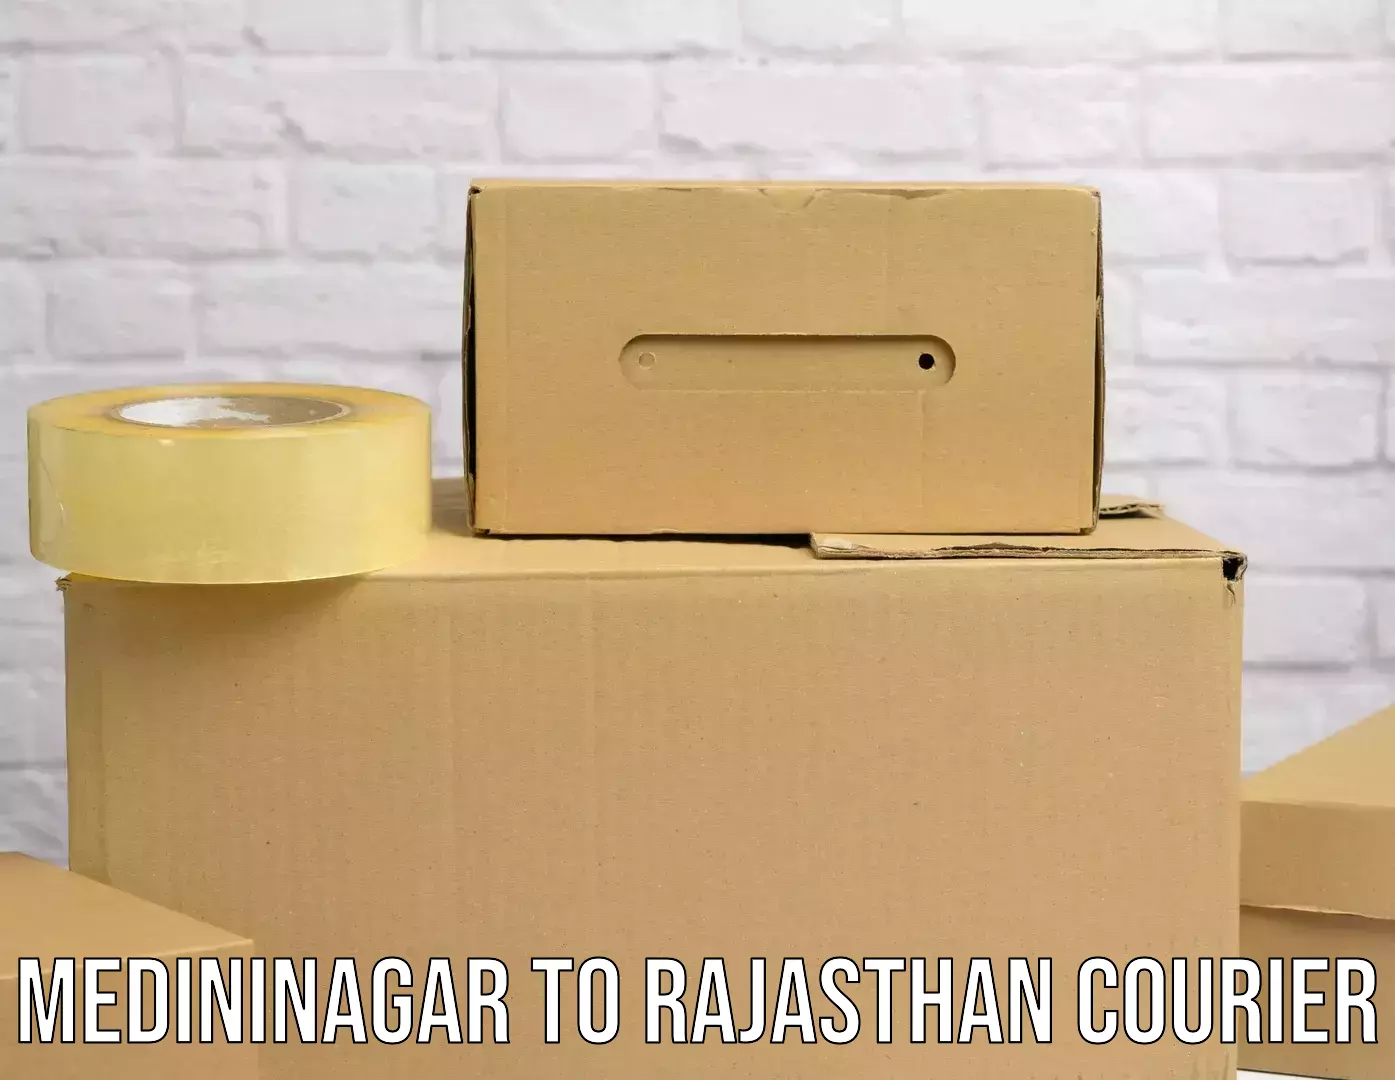 Courier service comparison Medininagar to Jaisalmer